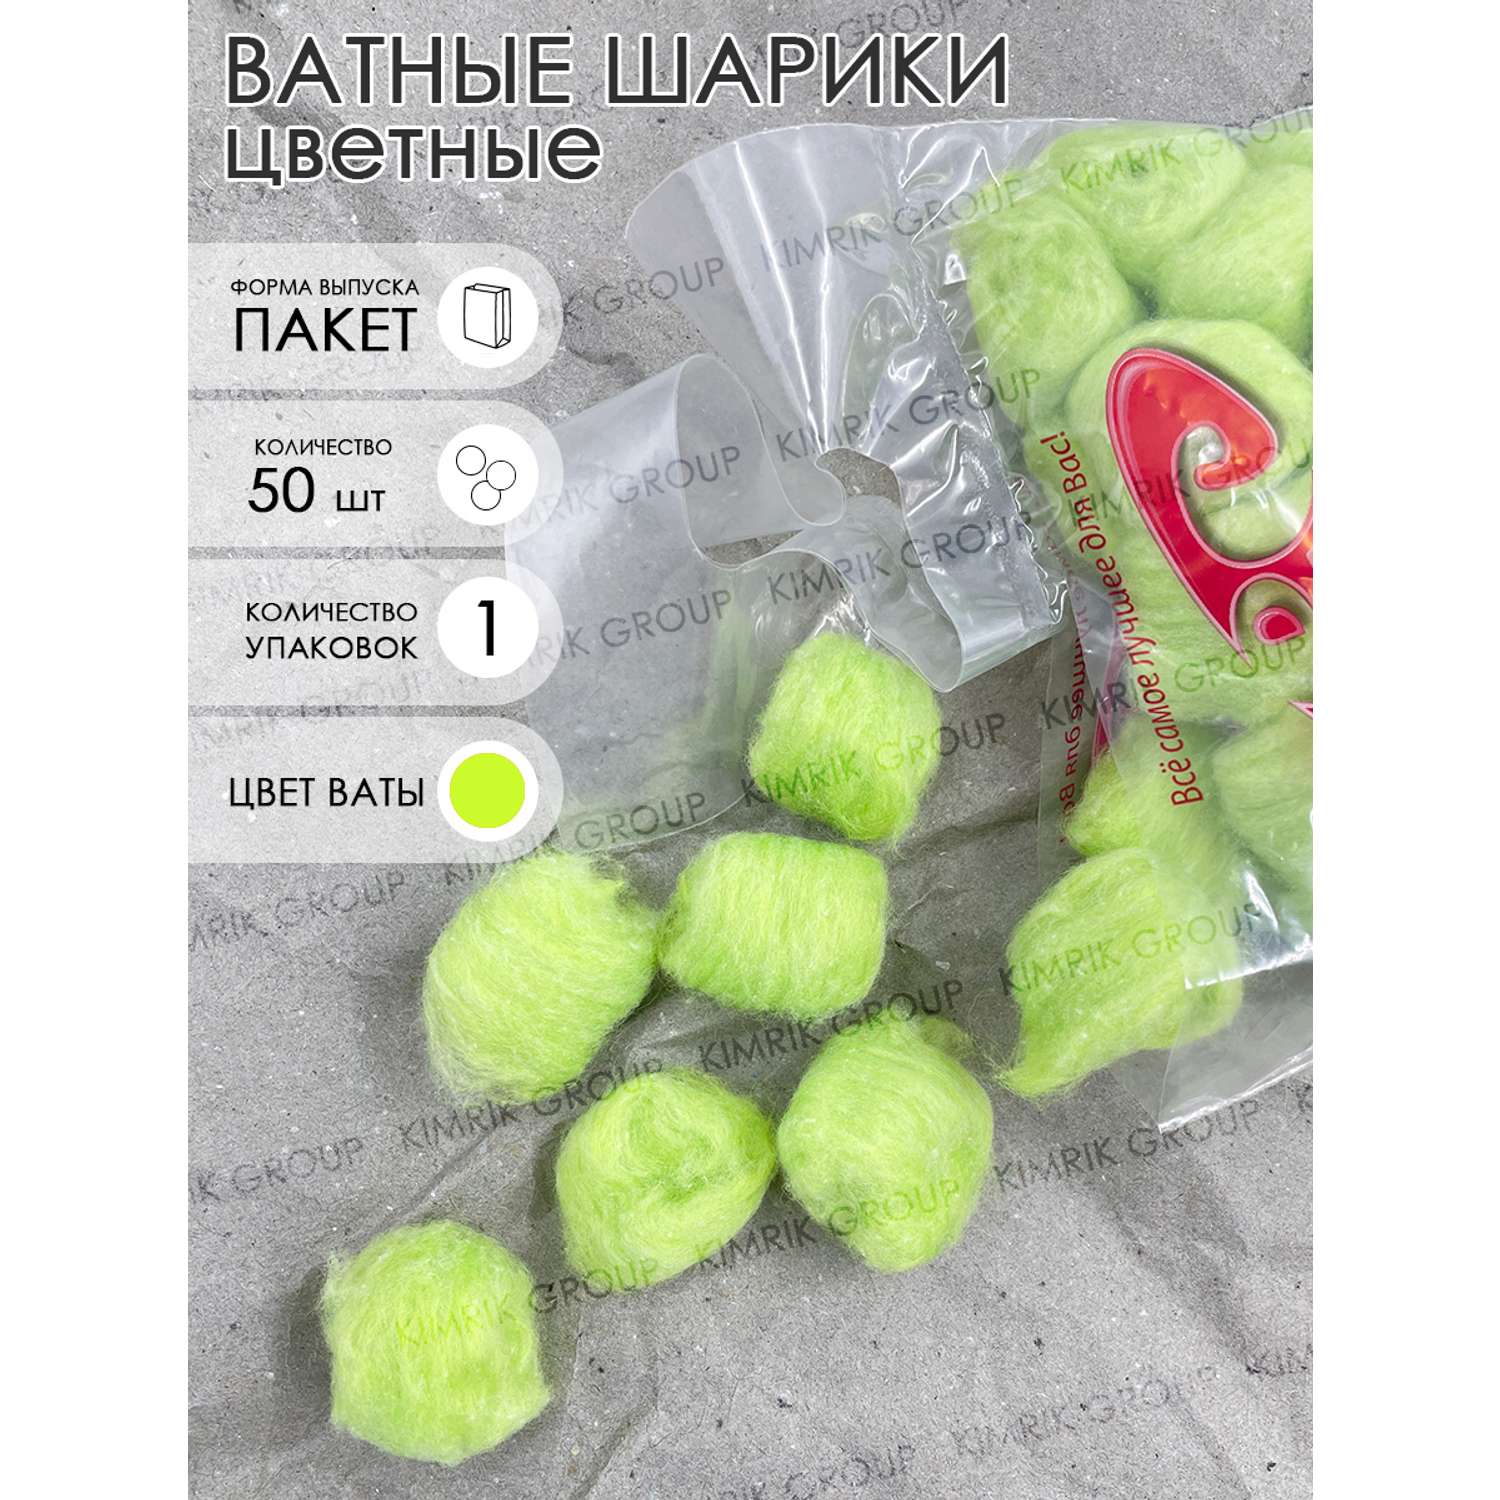 Ватные шарики Емельянъ Савостинъ цветные косметические зеленые 50 шт - фото 2